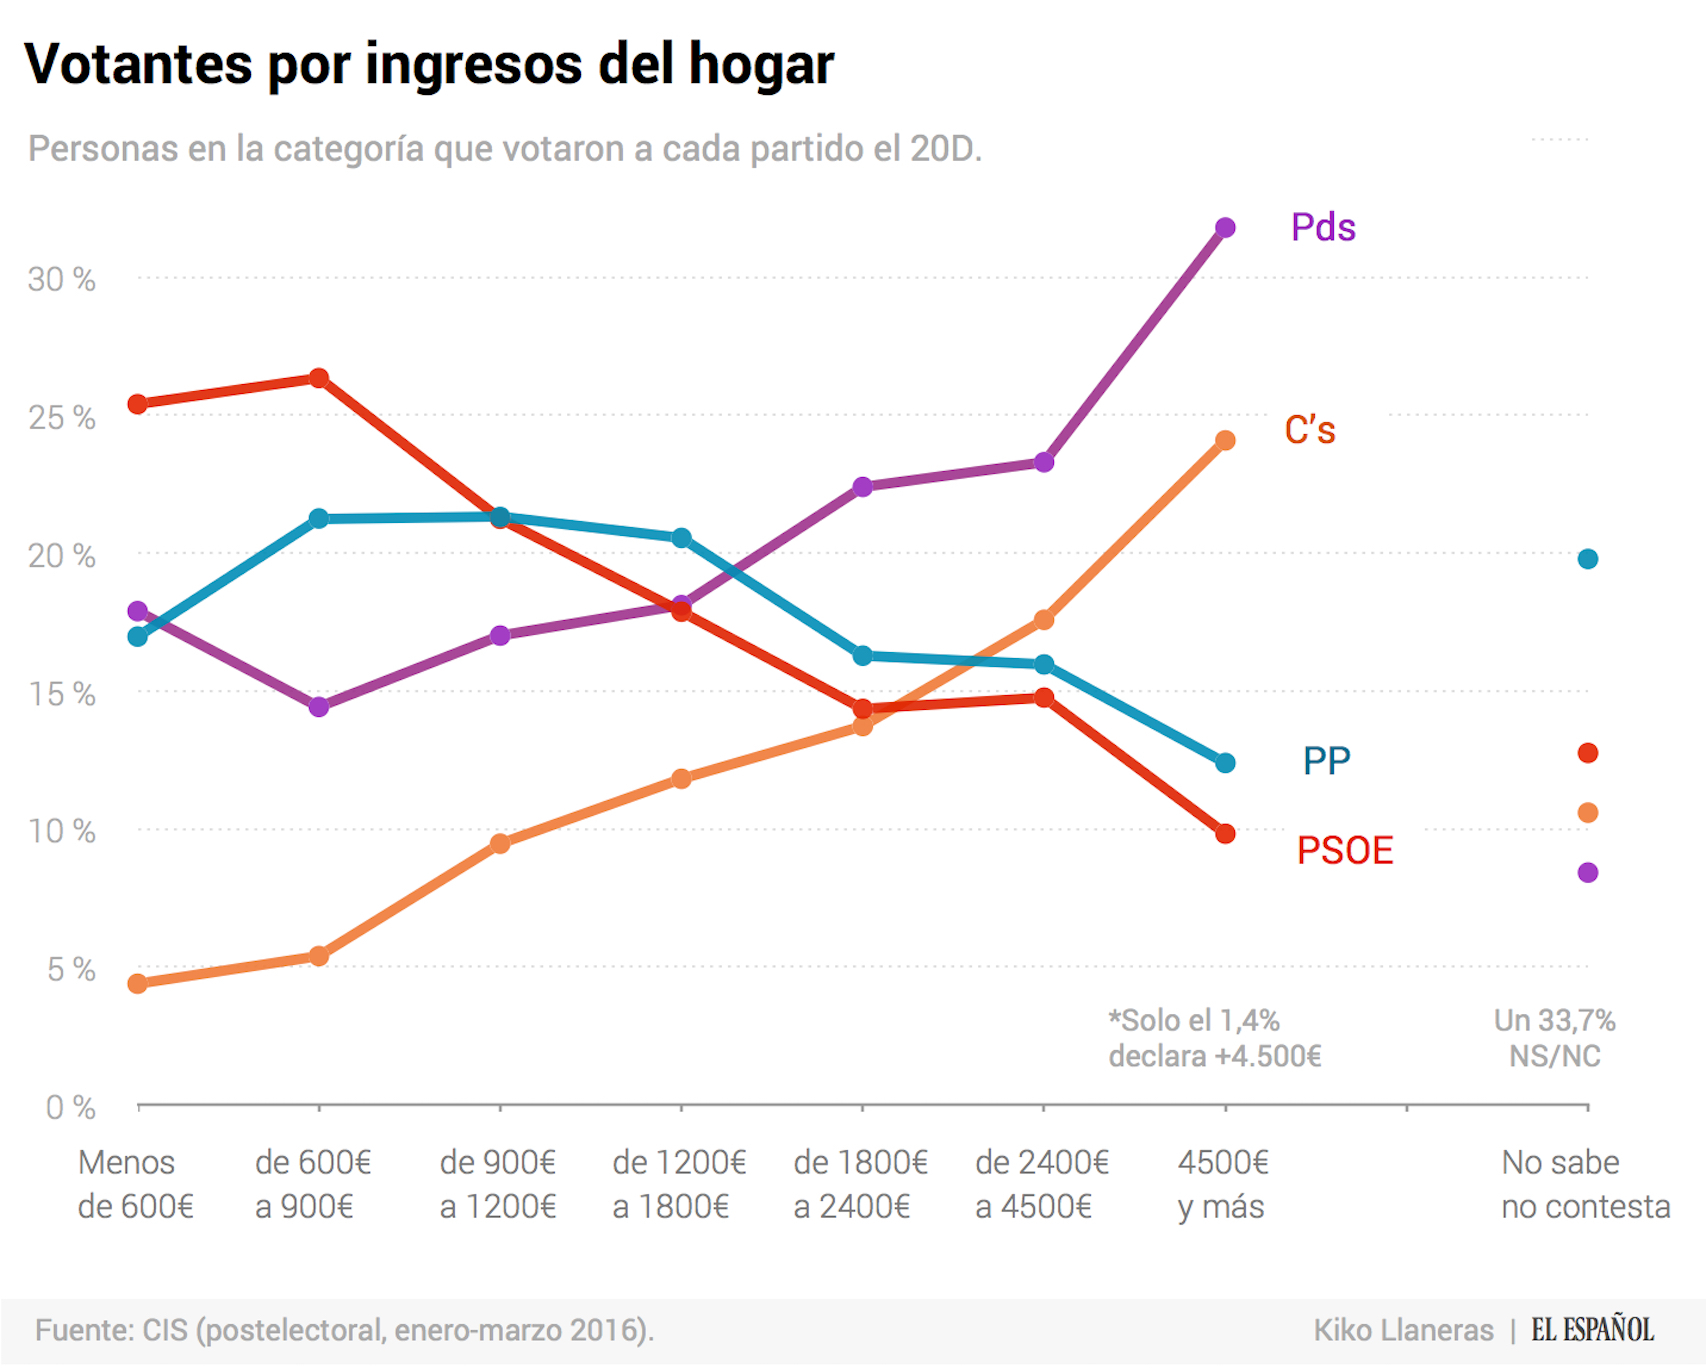 Se filtra una encuesta a pie de urna. Gana PP, seguido de Podemos.